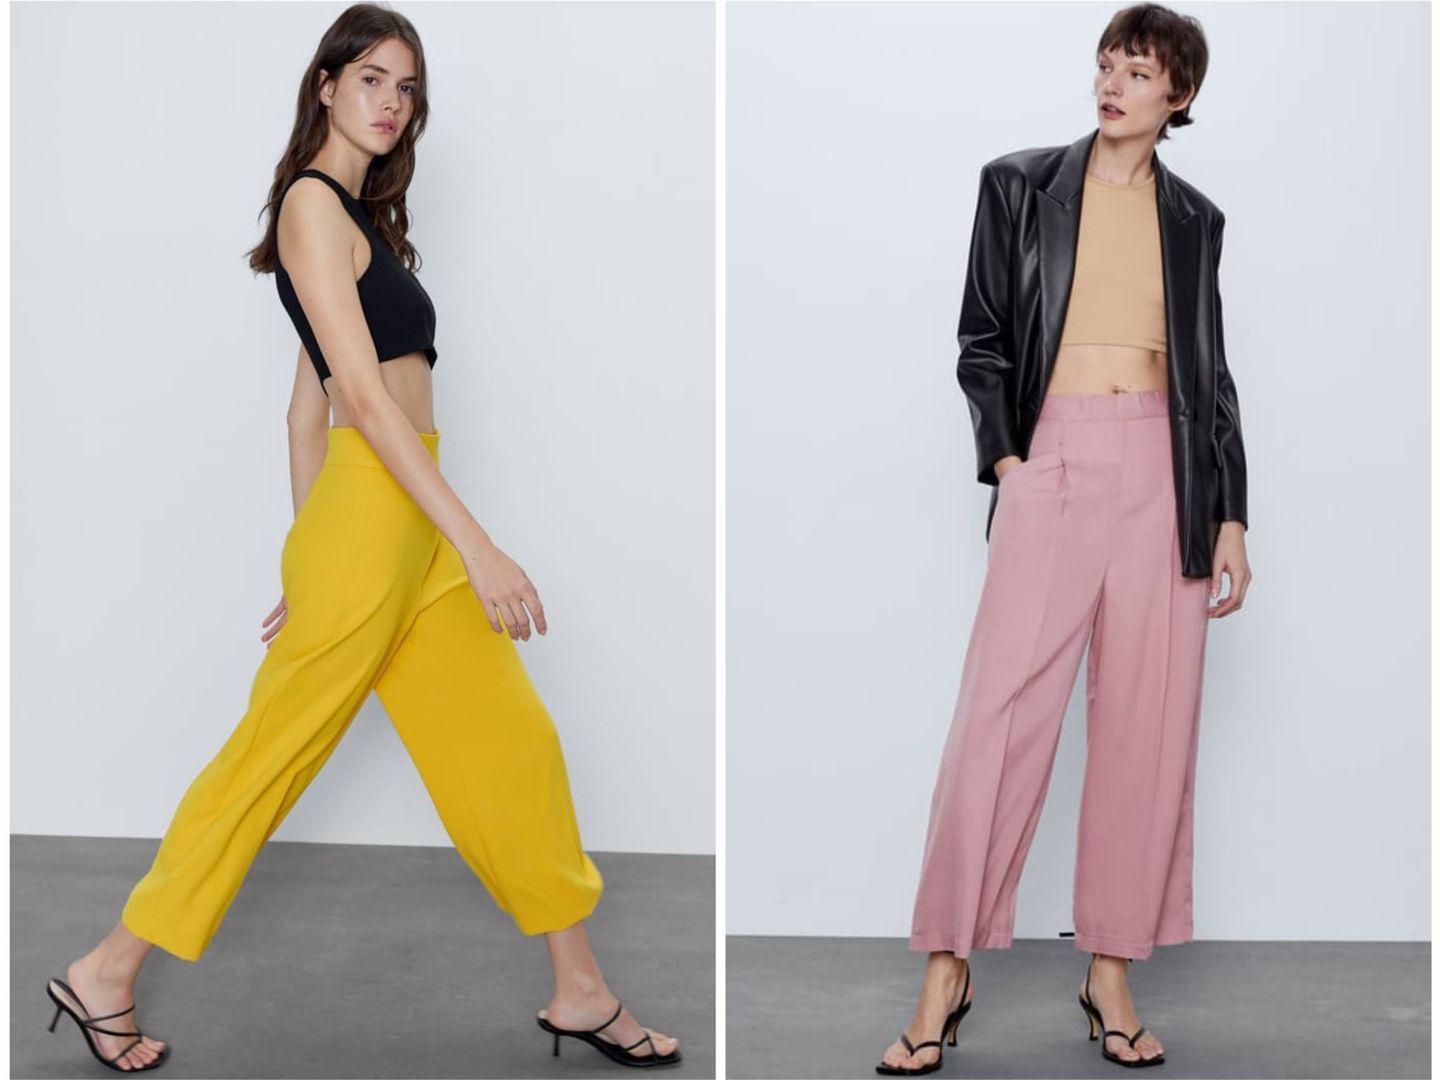 Nuevos diseños de pantalón de Zara. (Cortesía)